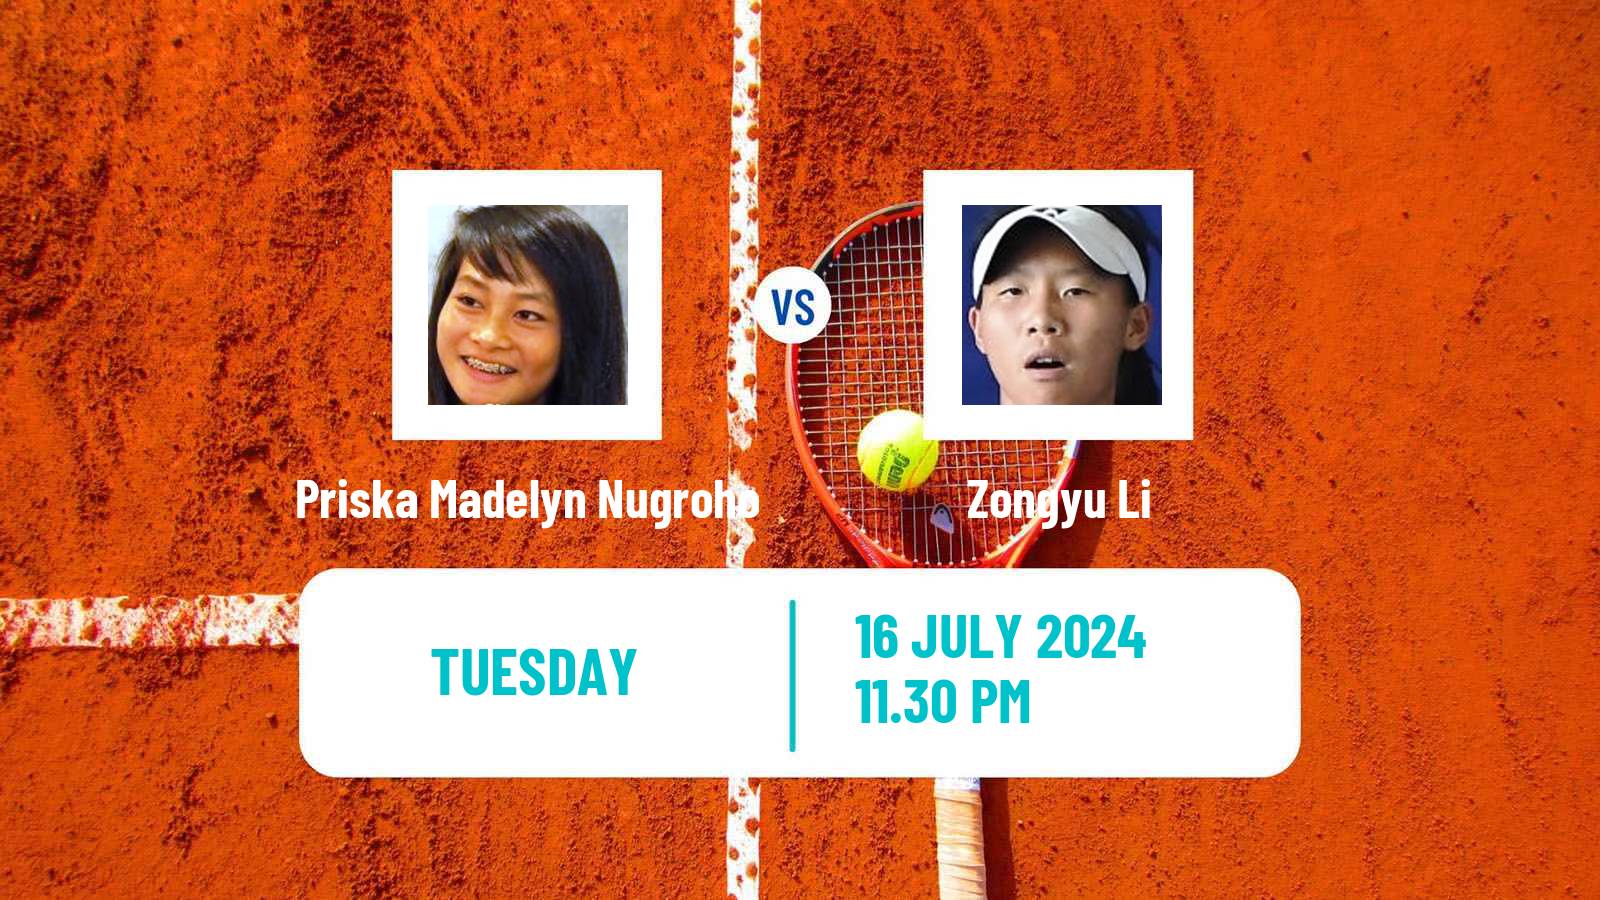 Tennis ITF W35 Tianjin 2 Women Priska Madelyn Nugroho - Zongyu Li